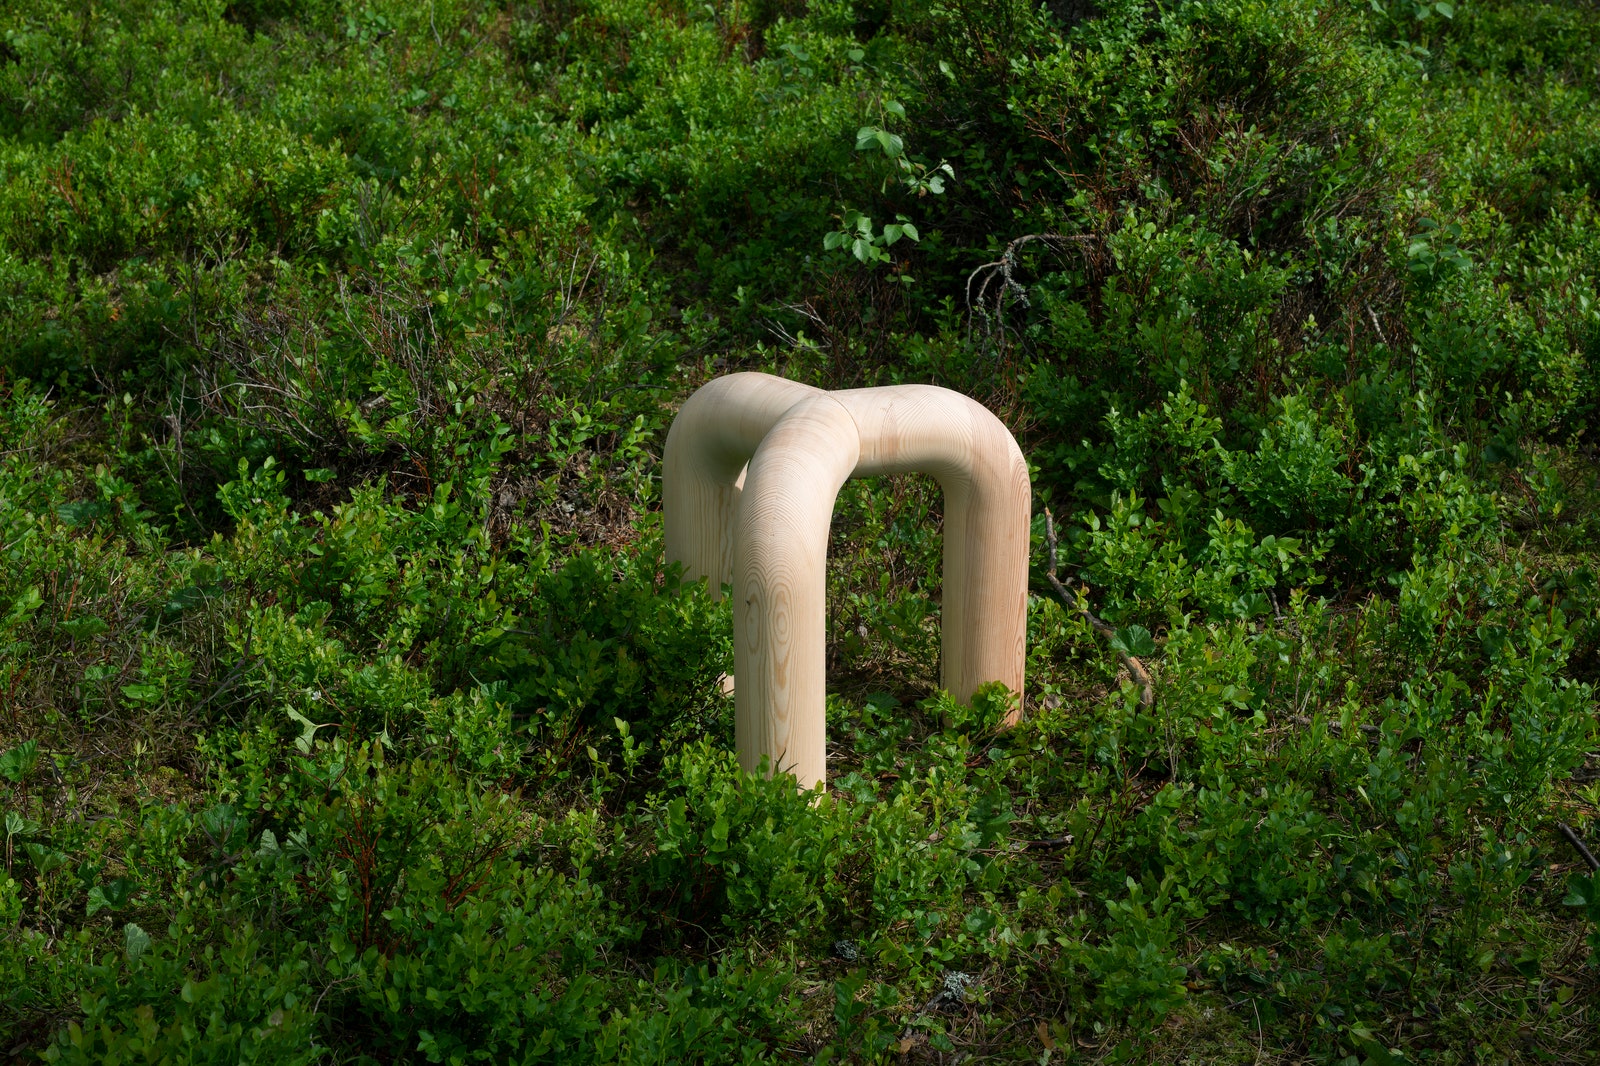 Мебель из сосны по дизайну Studio Sløyd